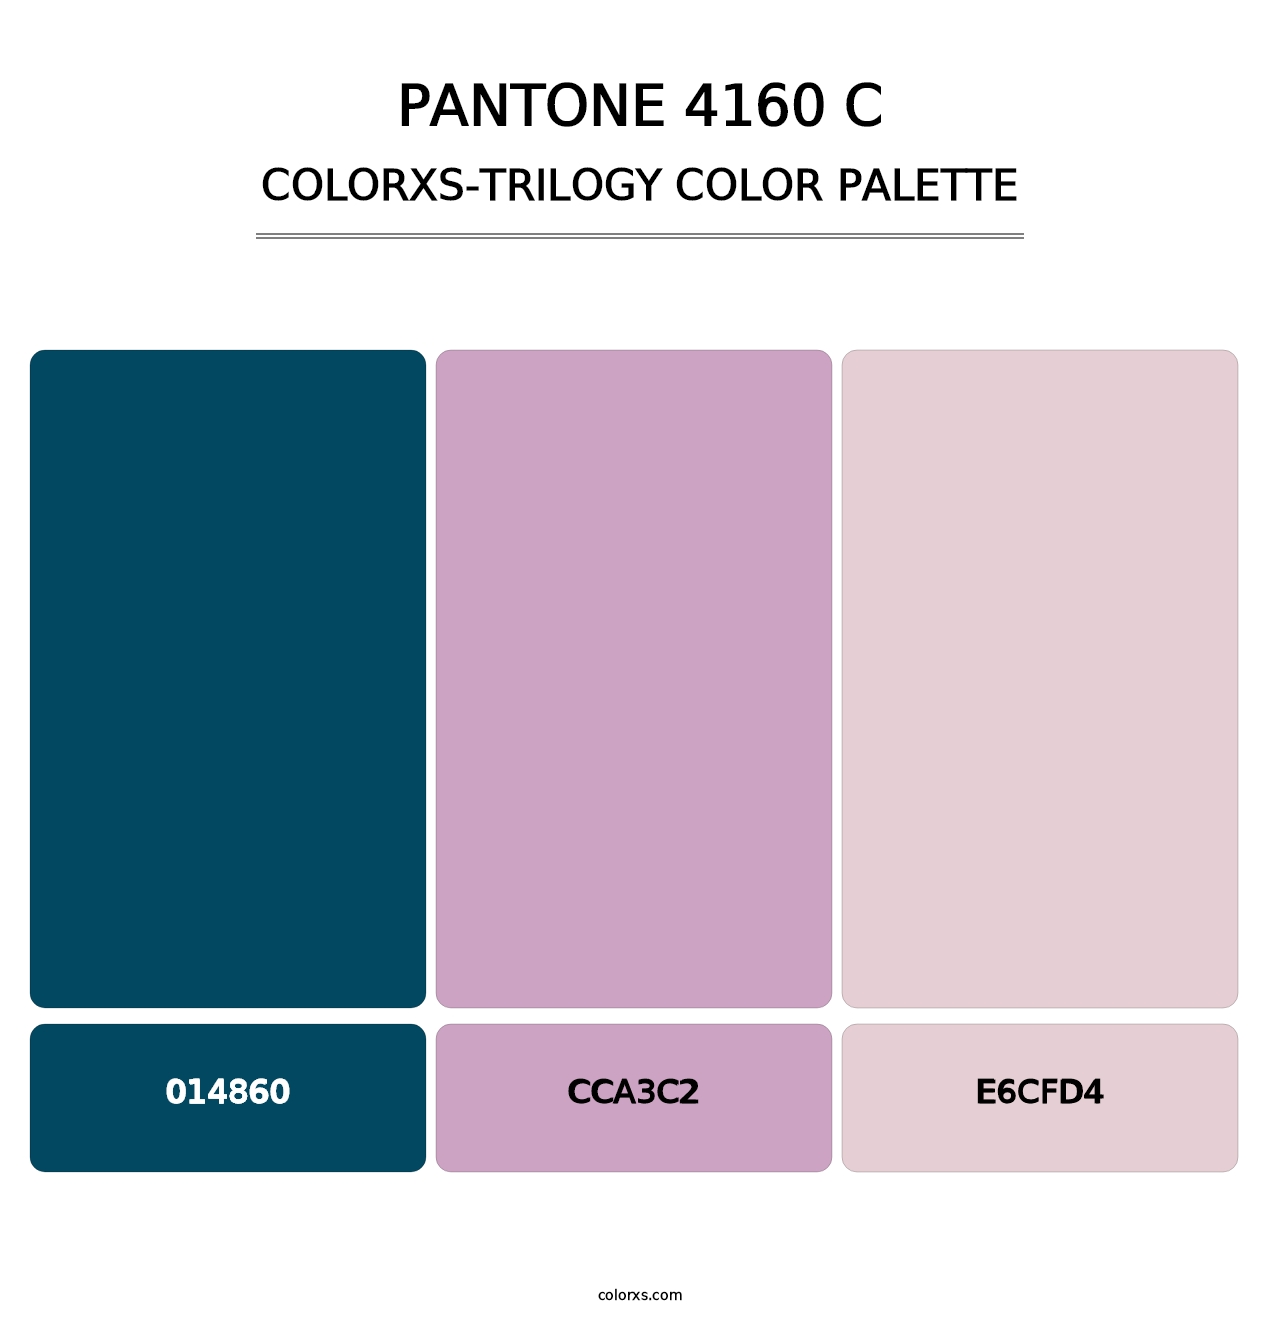 PANTONE 4160 C - Colorxs Trilogy Palette